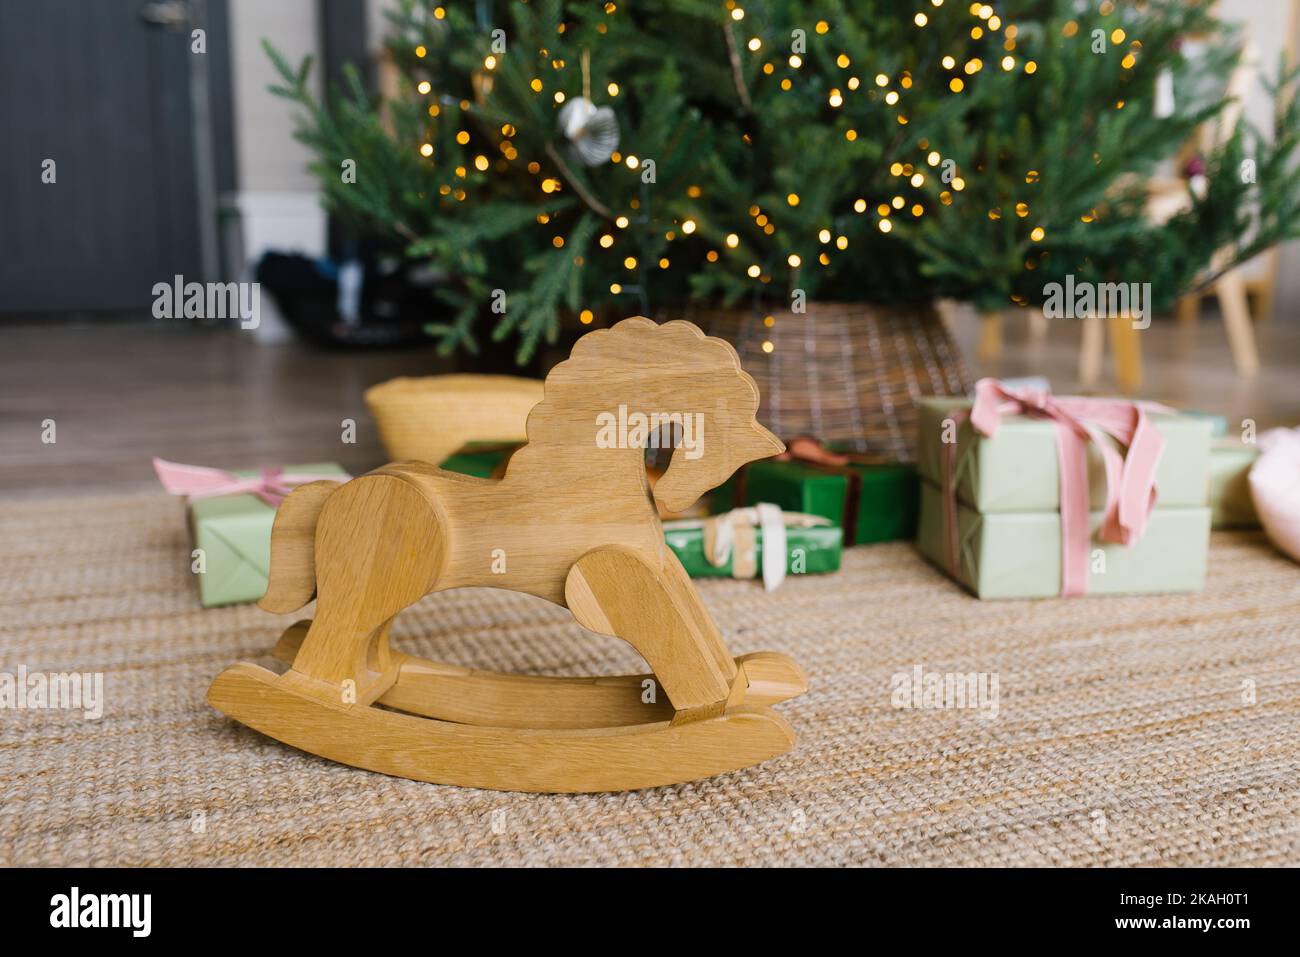 Silla de ruedas de juguete a caballo de madera sobre el fondo de las luces del árbol de Navidad y regalos con espacio para copias Foto de stock